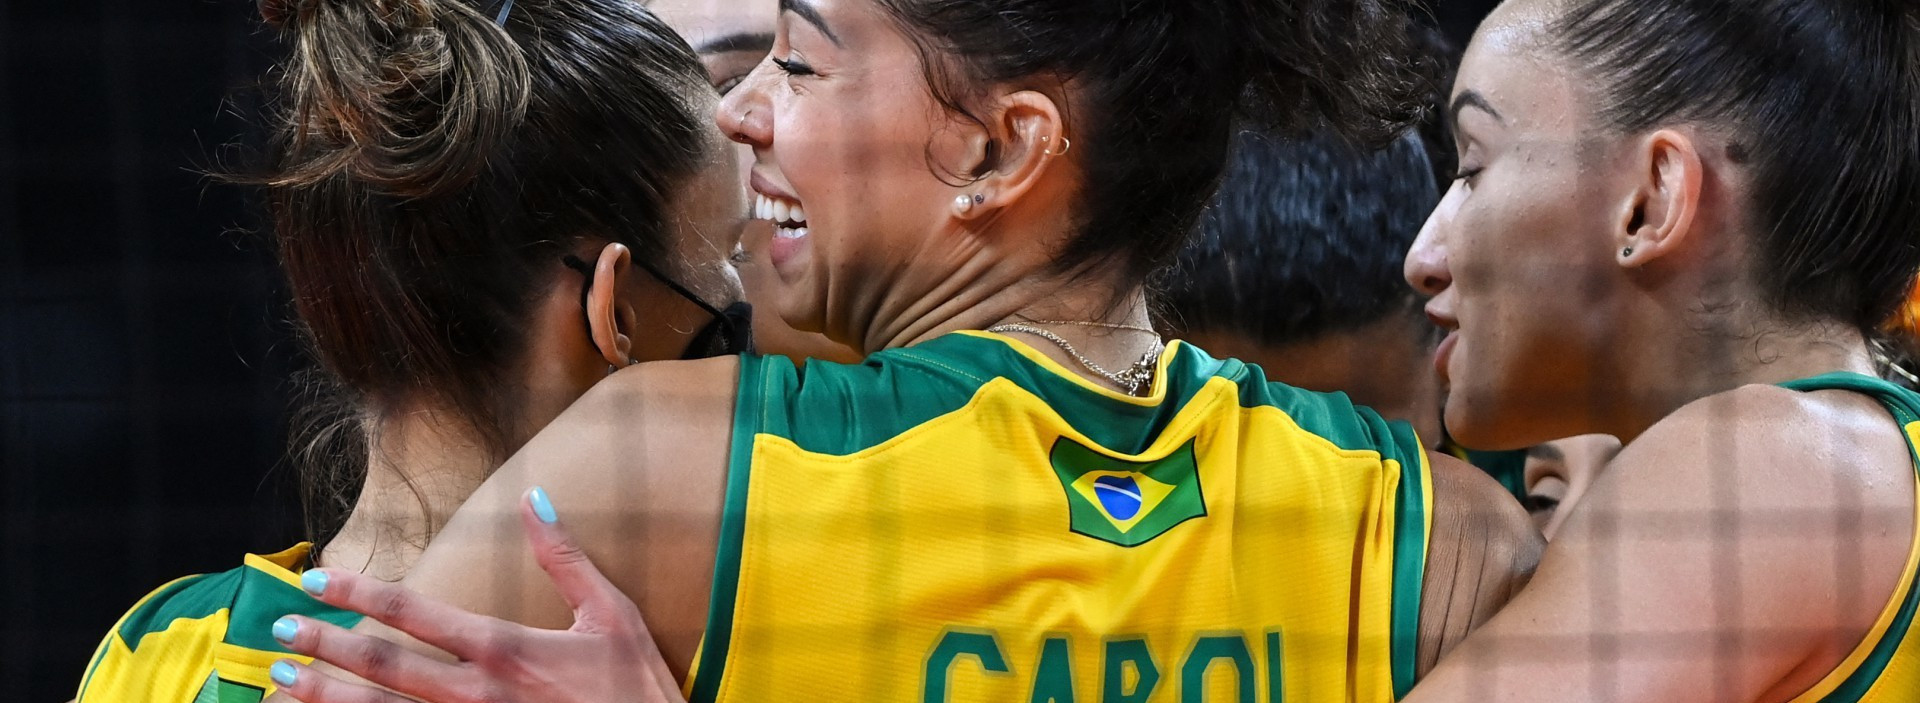 Vôlei: as brasileiras chegaram à final da Olimpíada de Tóquio 2020. Cobertura multiplataforma levou informações em diversas mídias (Foto: YURI CORTEZ / AFP)